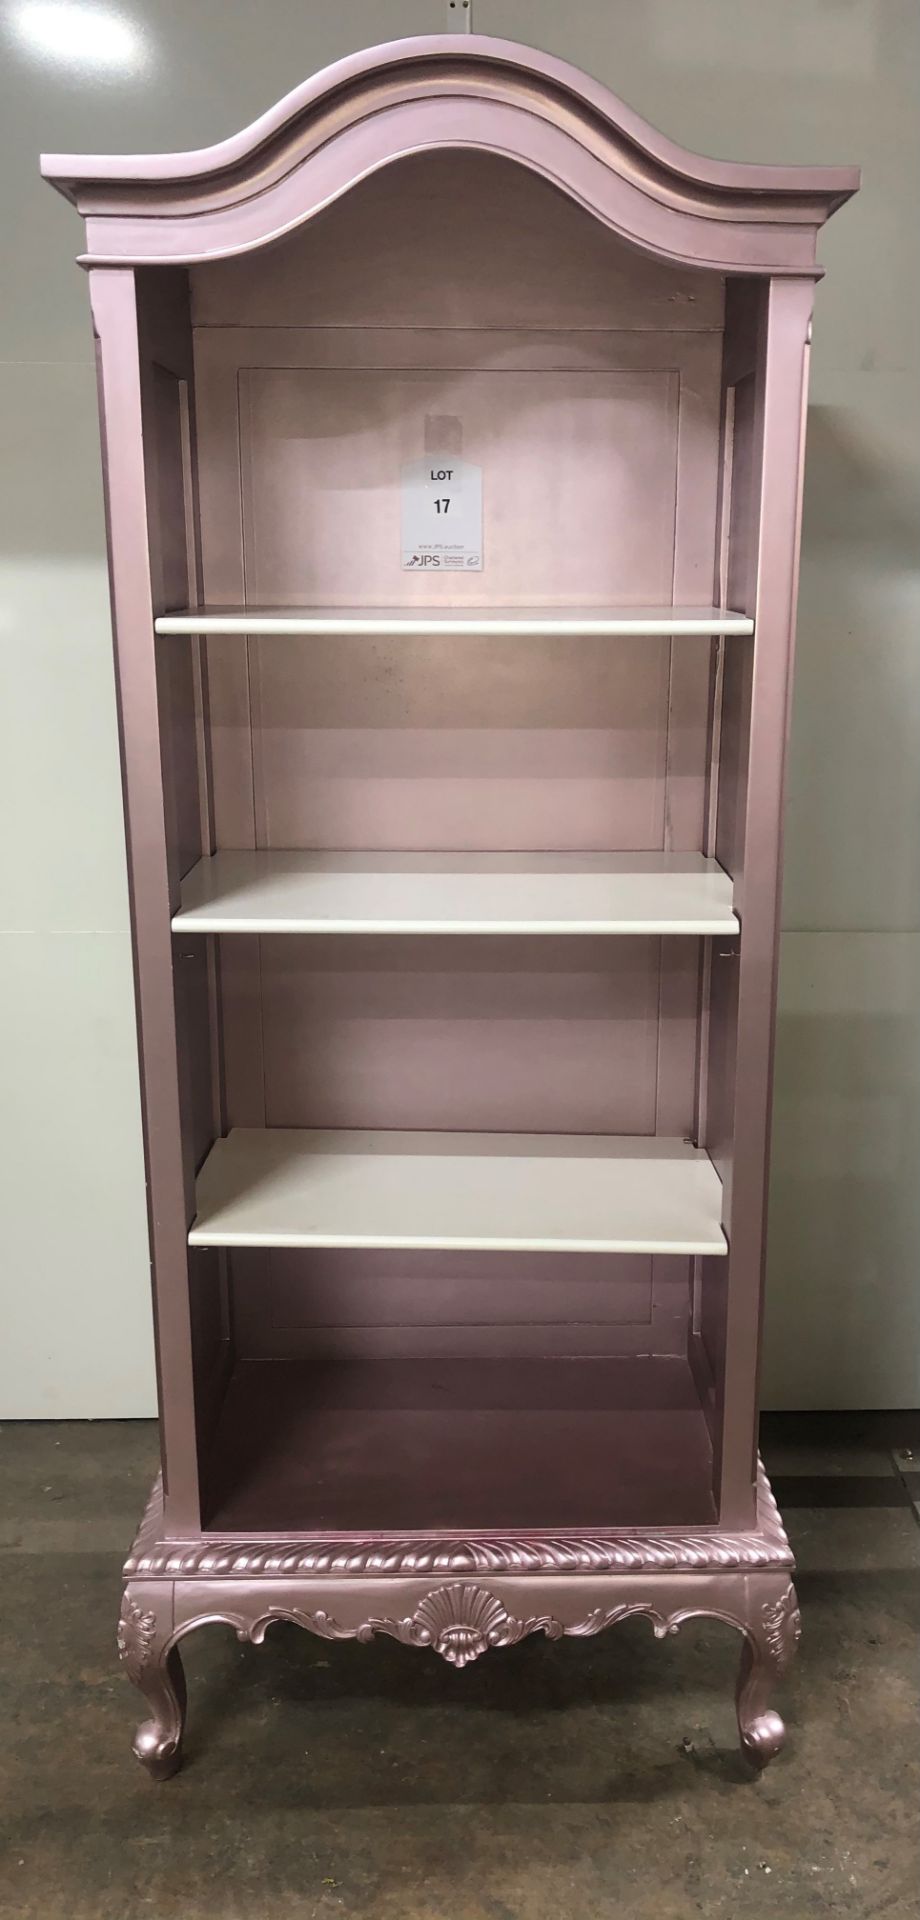 Wooden 3 Shelf Storage Unit in Pink